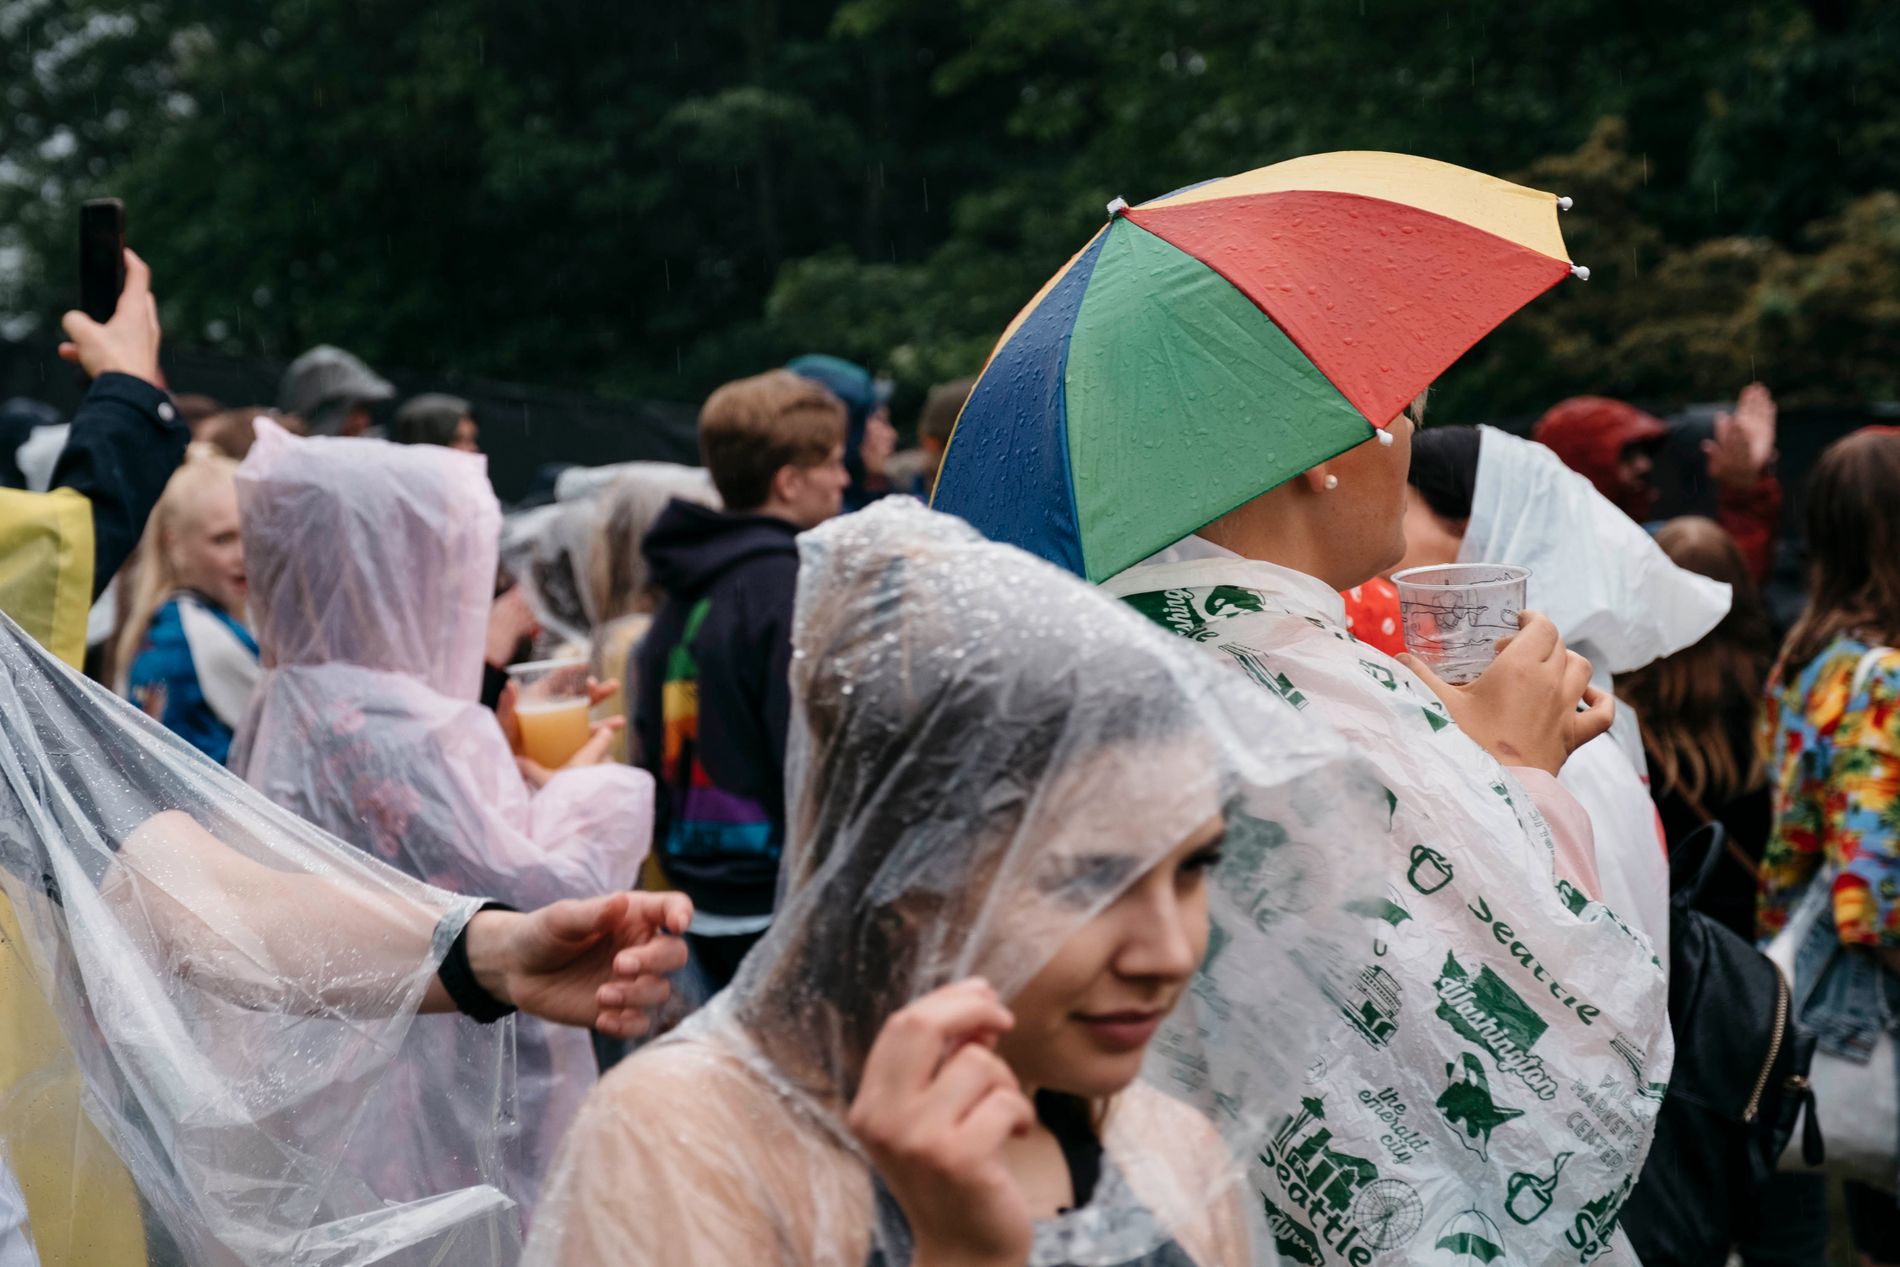 Paraply er ikke tillatt. Så regnponcho, sydvest - eventuelt en regn-paraply-hatt? Det er lov å være kreativ! 